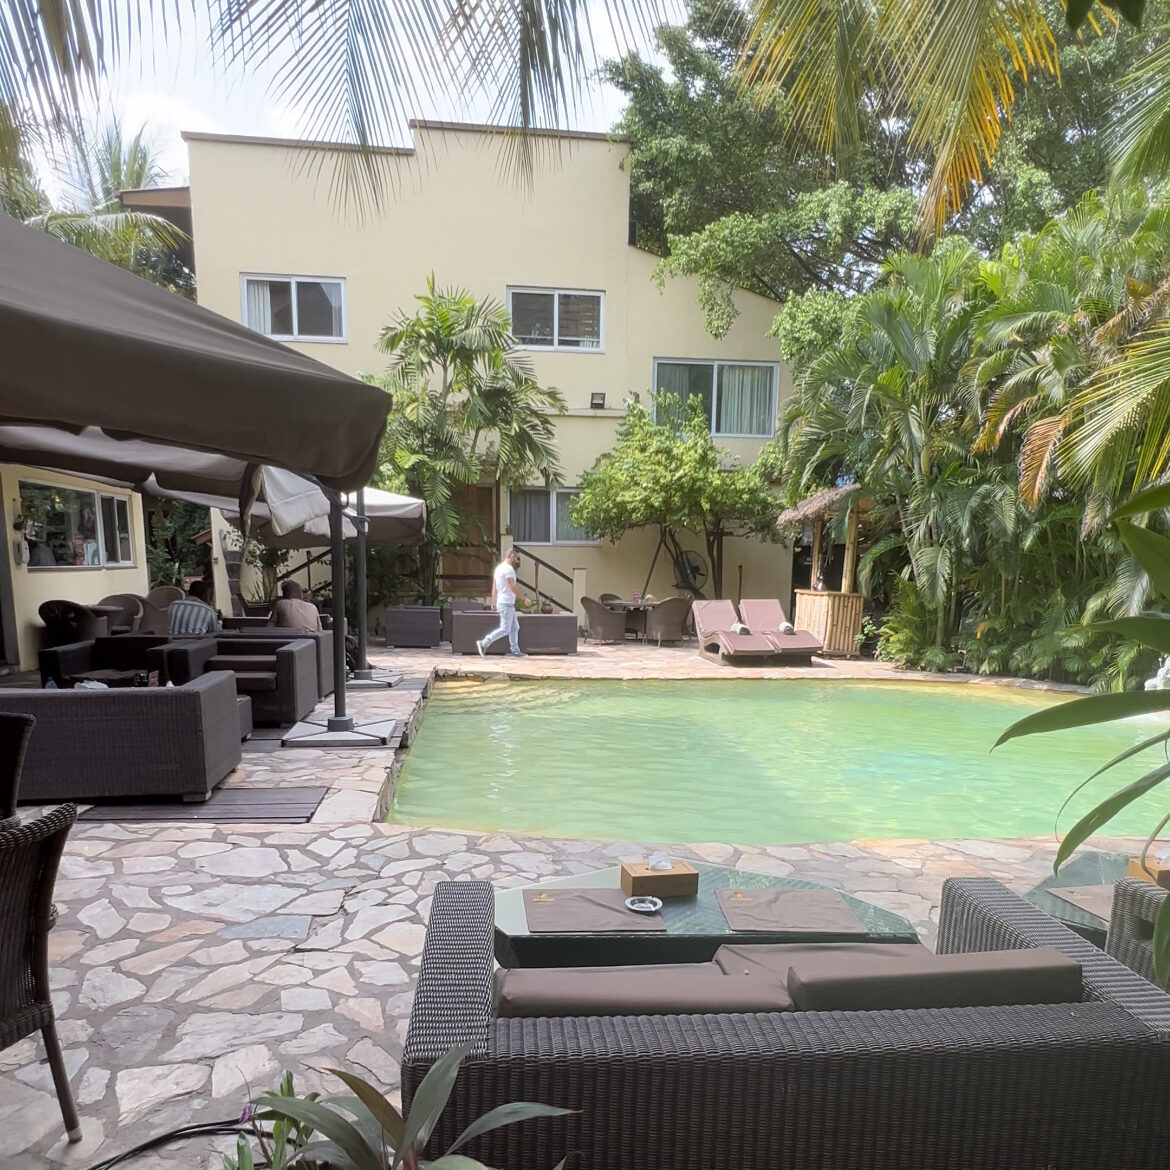 The pool area at La Villa Boutique Hotel. 